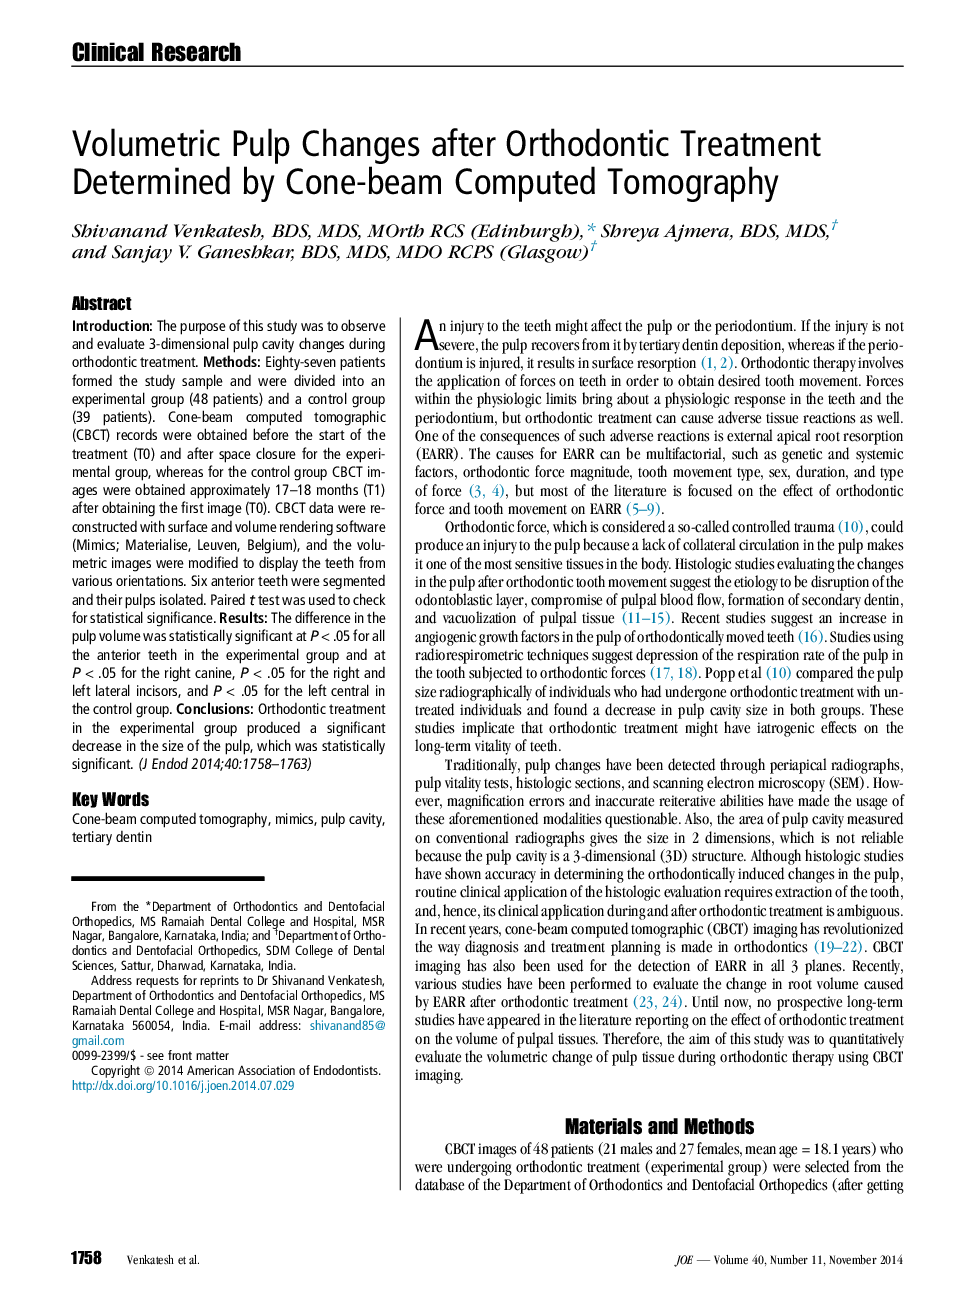 تغییرات پالپ حجمی پس از درمان ارتودنسی تعیین شده توسط توموگرافی کامپیوتری کانال پرتو 